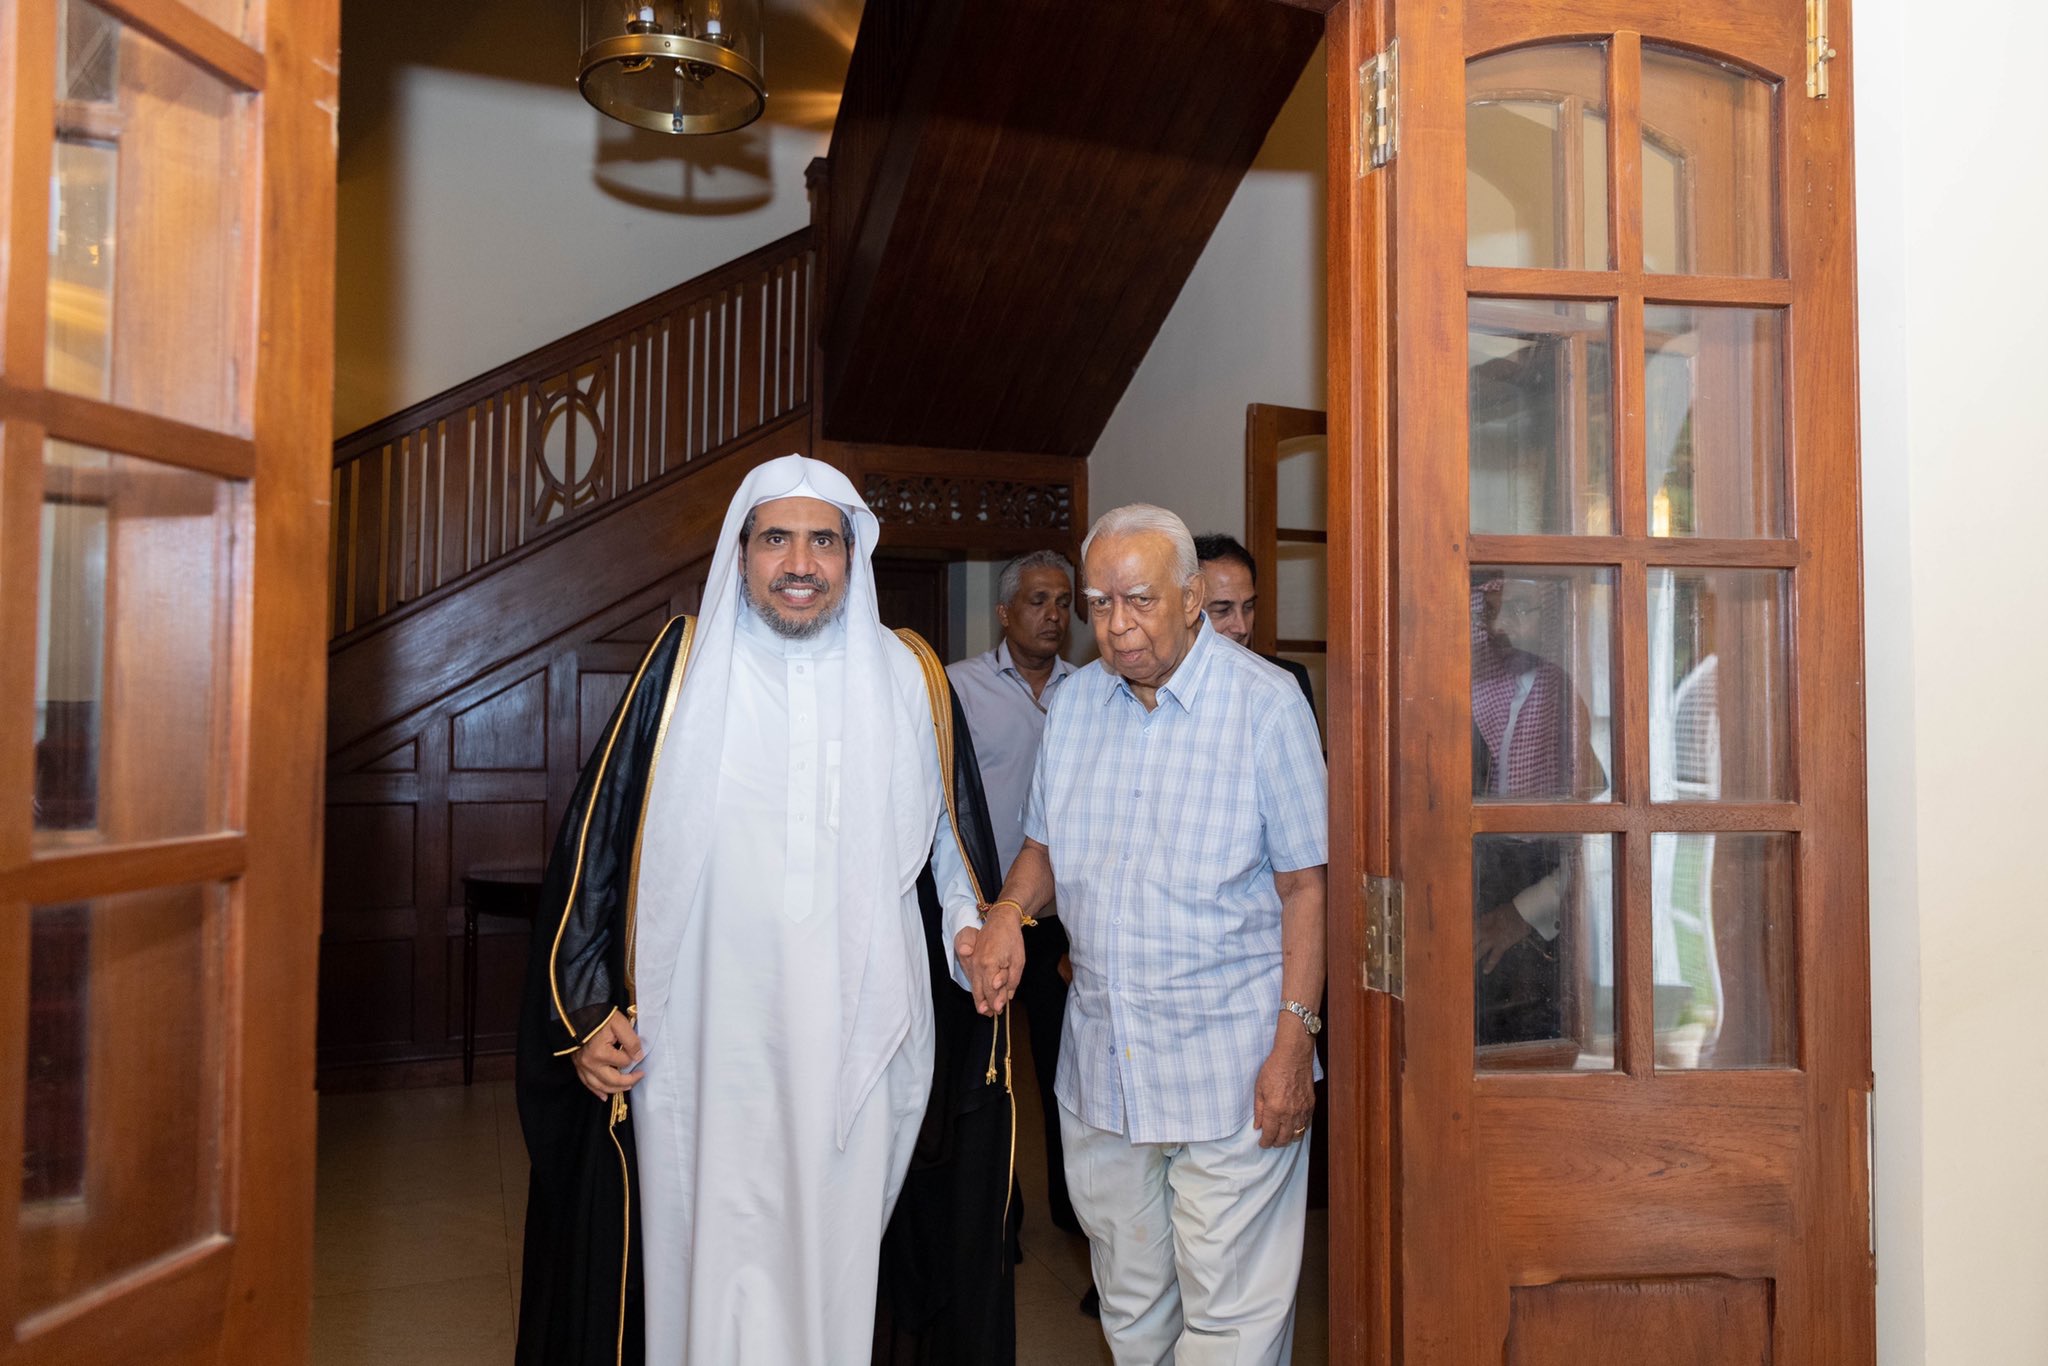 Le SG de la Ligue Islamique Mondiale a rencontré le chef de l’alliance tamoule M. Rathbane qui a loué les efforts du D. Mohammad Alissa pour la promotion des relations entre les groupes surtout au Sri Lanka en vue d’aider à l’harmonie dont le SG a confirmé l’importance.